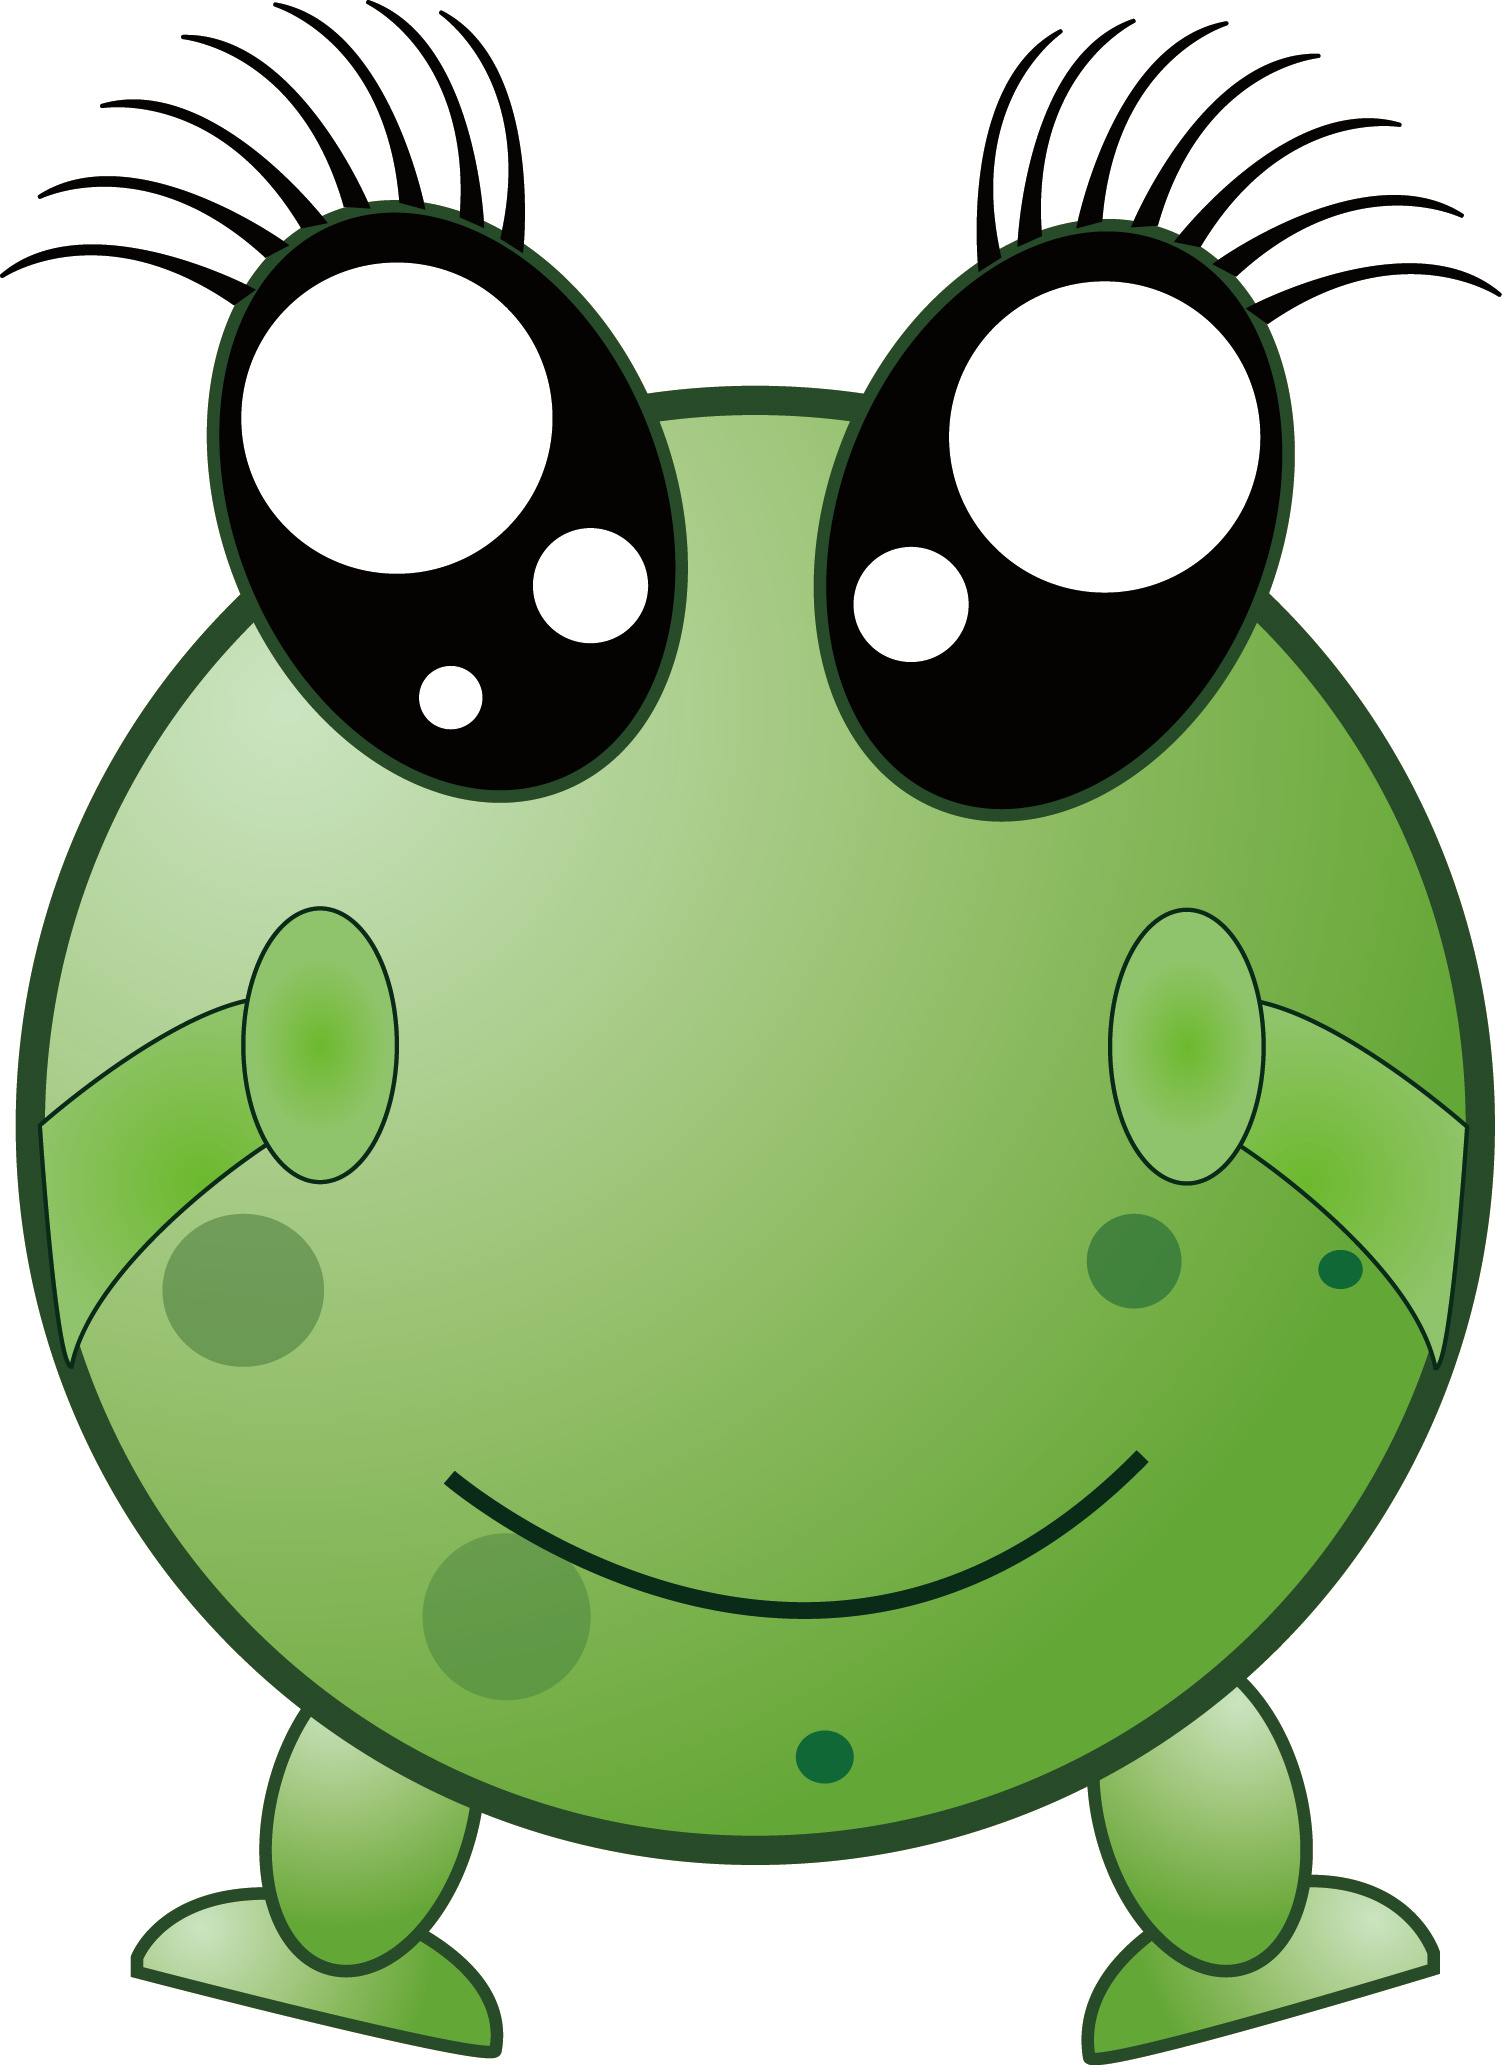 绿豆蛙大笑图片